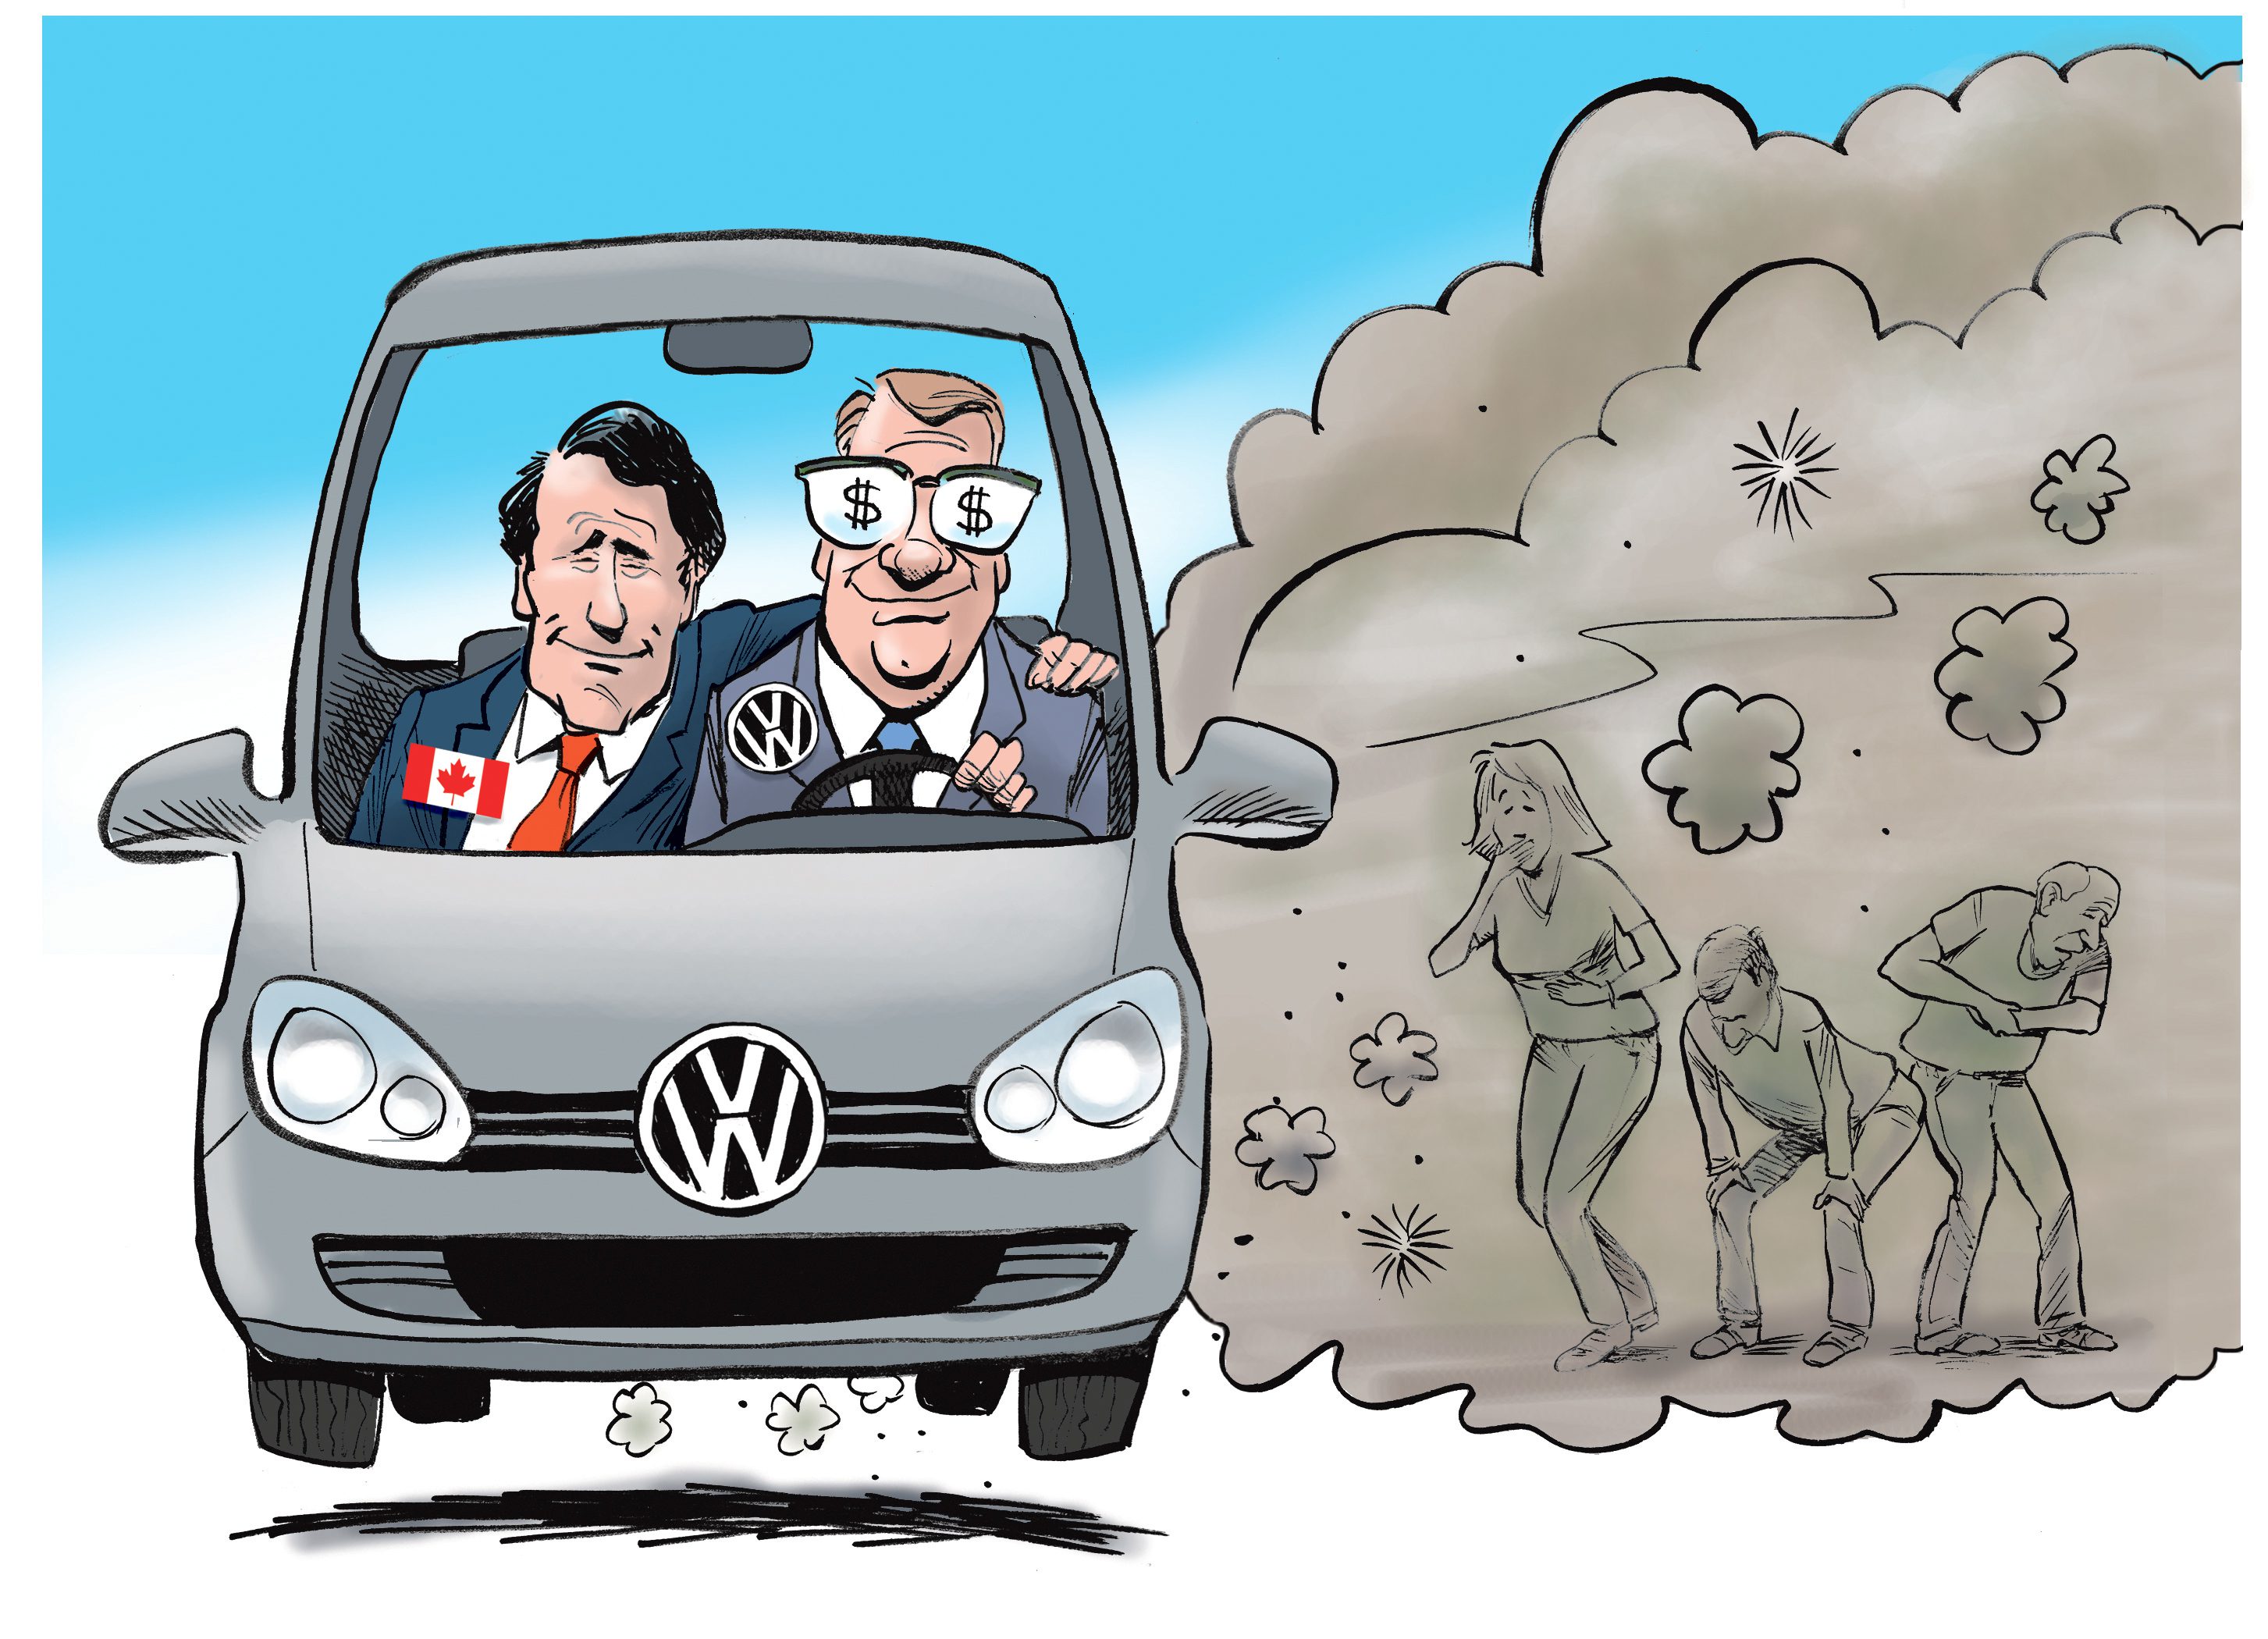 Volkswagen cartoon canada